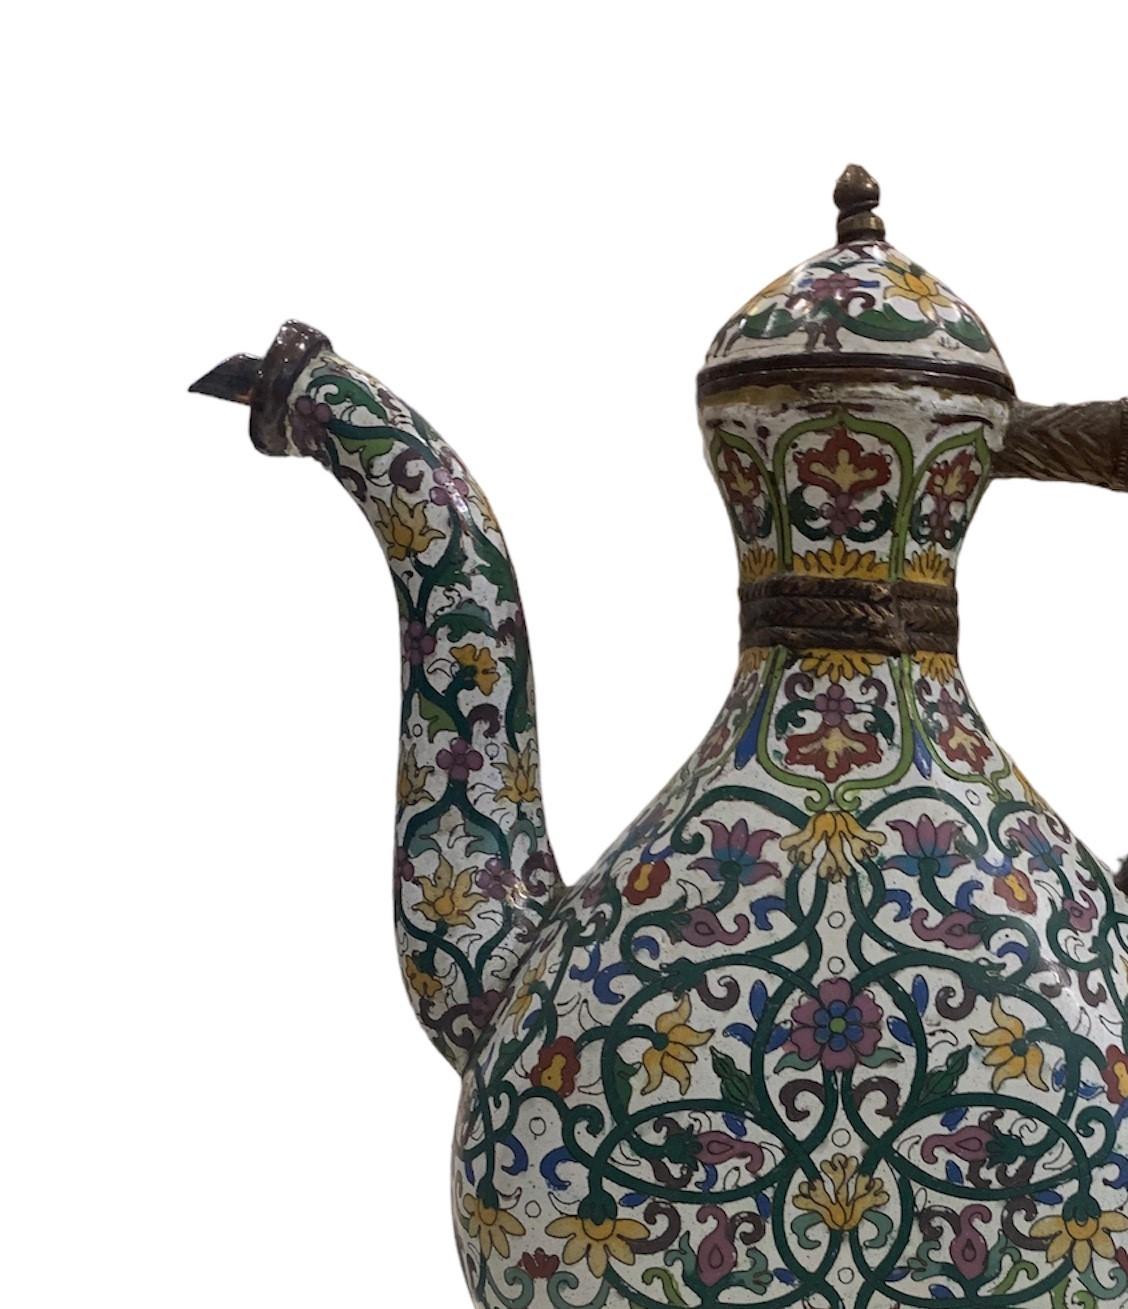 L'aiguière moghole antique en laiton est une magnifique pièce d'art et d'artisanat qui reflète l'opulence et la grandeur de l'Empire moghol. Cette aiguière, qui date de la période moghole, est principalement fabriquée en laiton, un métal durable et